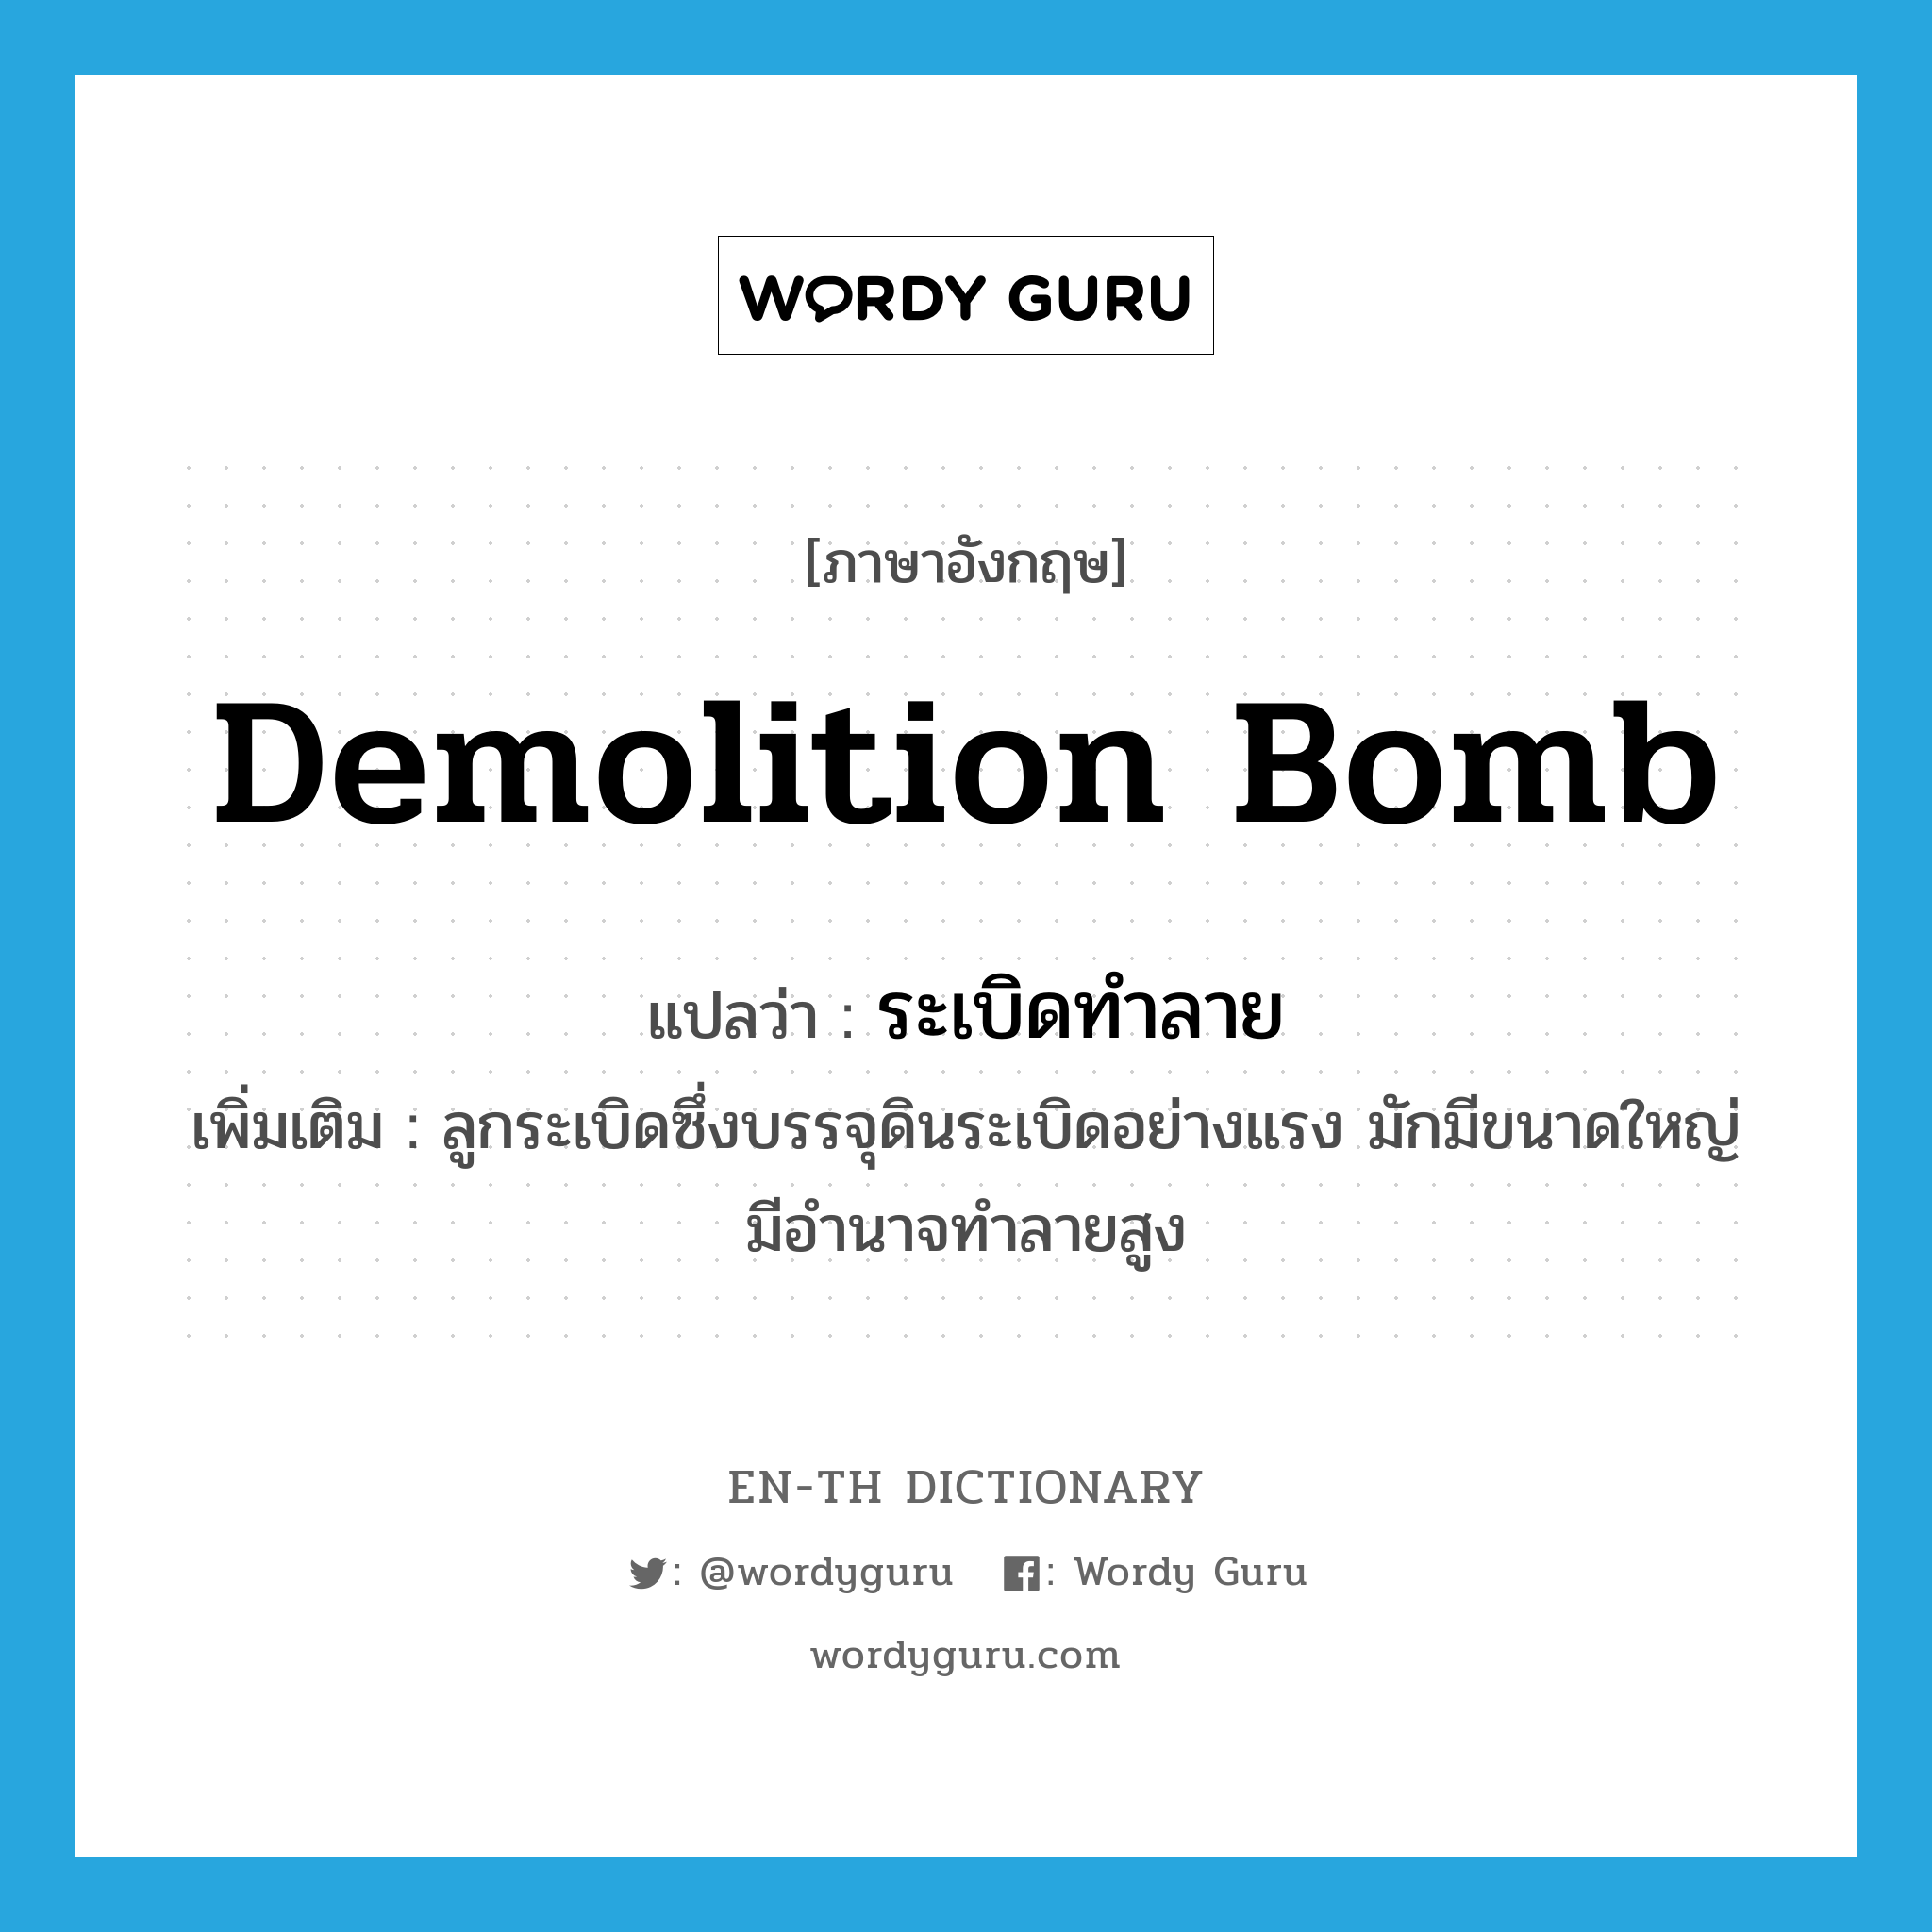 demolition bomb แปลว่า?, คำศัพท์ภาษาอังกฤษ demolition bomb แปลว่า ระเบิดทำลาย ประเภท N เพิ่มเติม ลูกระเบิดซึ่งบรรจุดินระเบิดอย่างแรง มักมีขนาดใหญ่ มีอำนาจทำลายสูง หมวด N